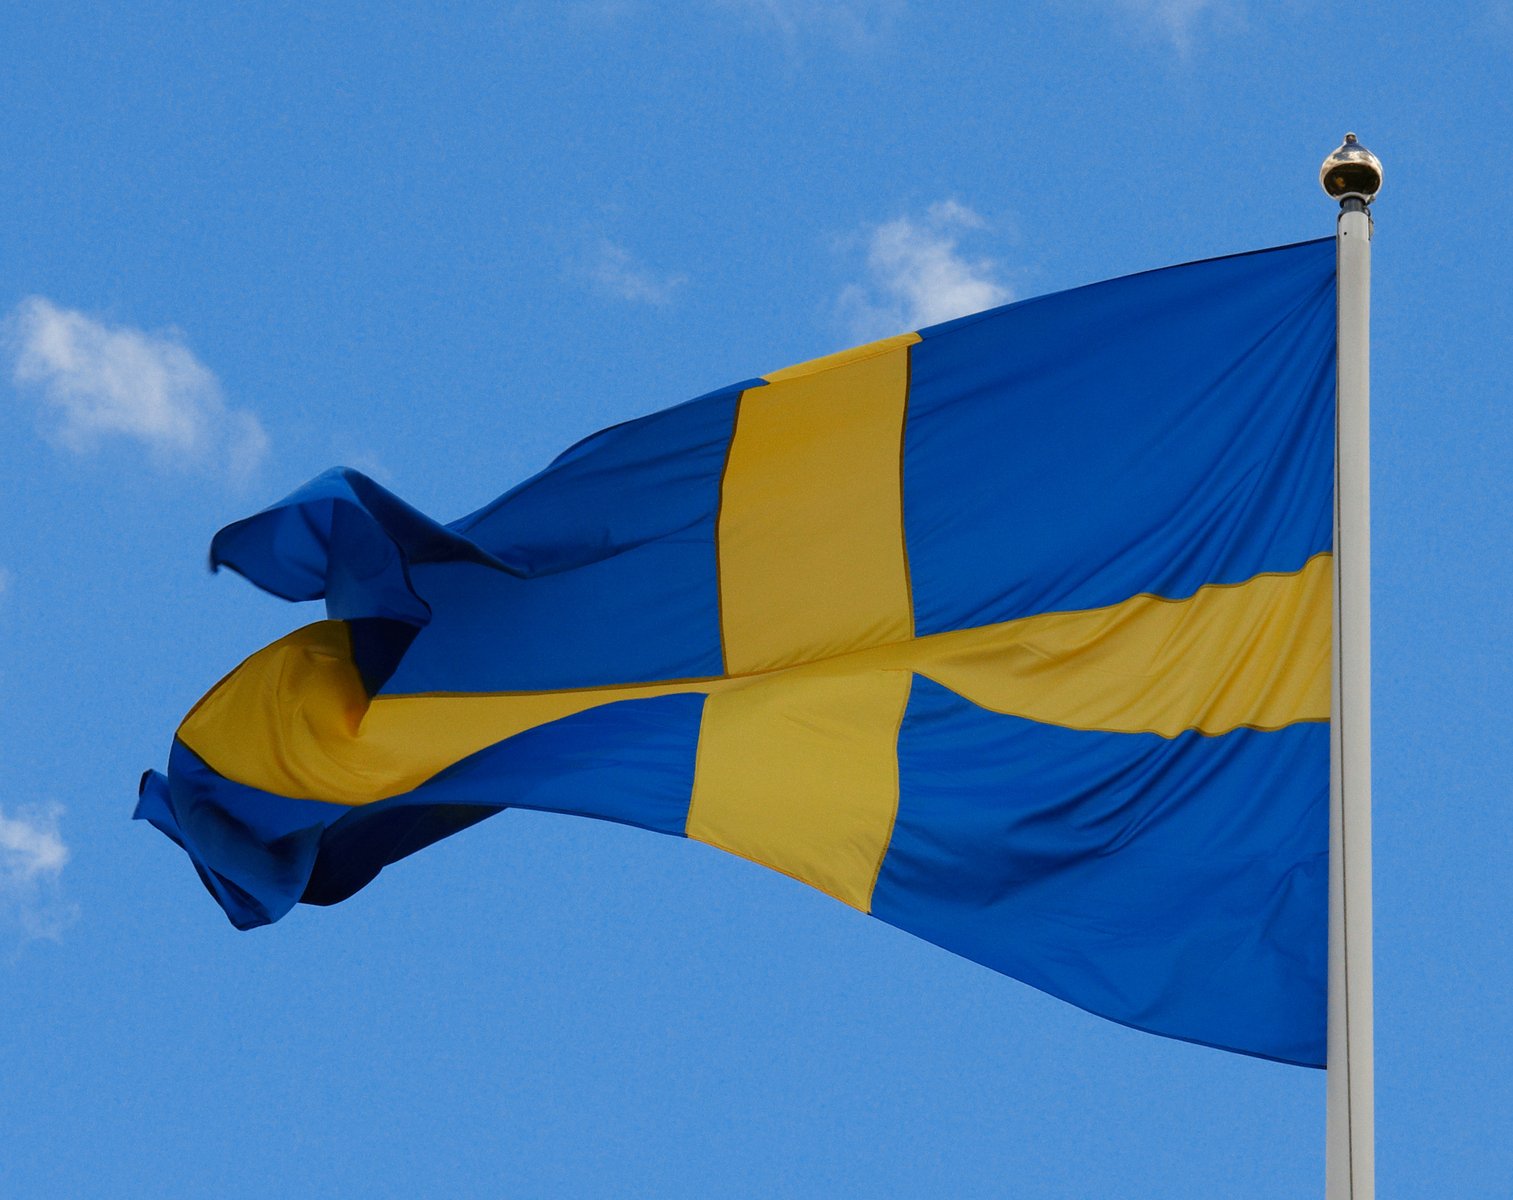 Svenska aktier får global uppmärksamhet efter ytterligare räntesänkning